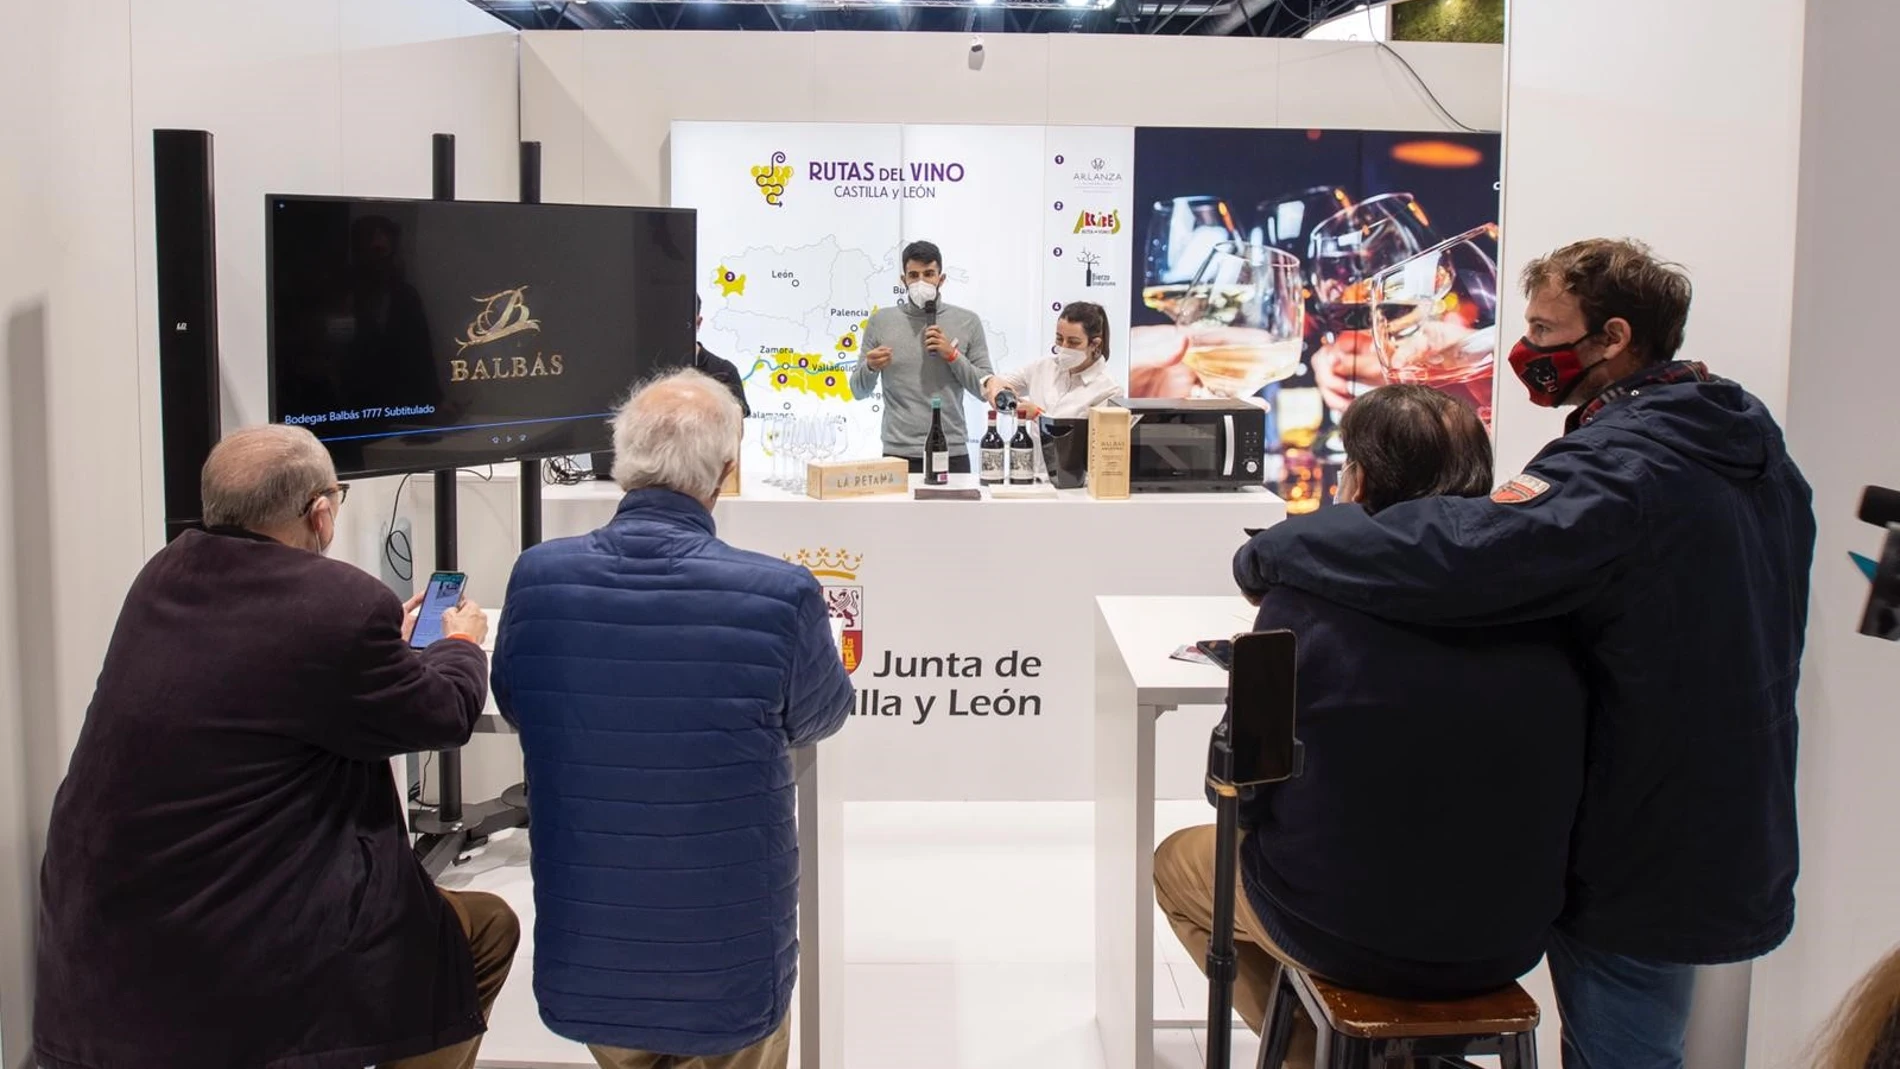 El expositor de la Junta de Castilla y León promociona las rutas del vino en Fitur